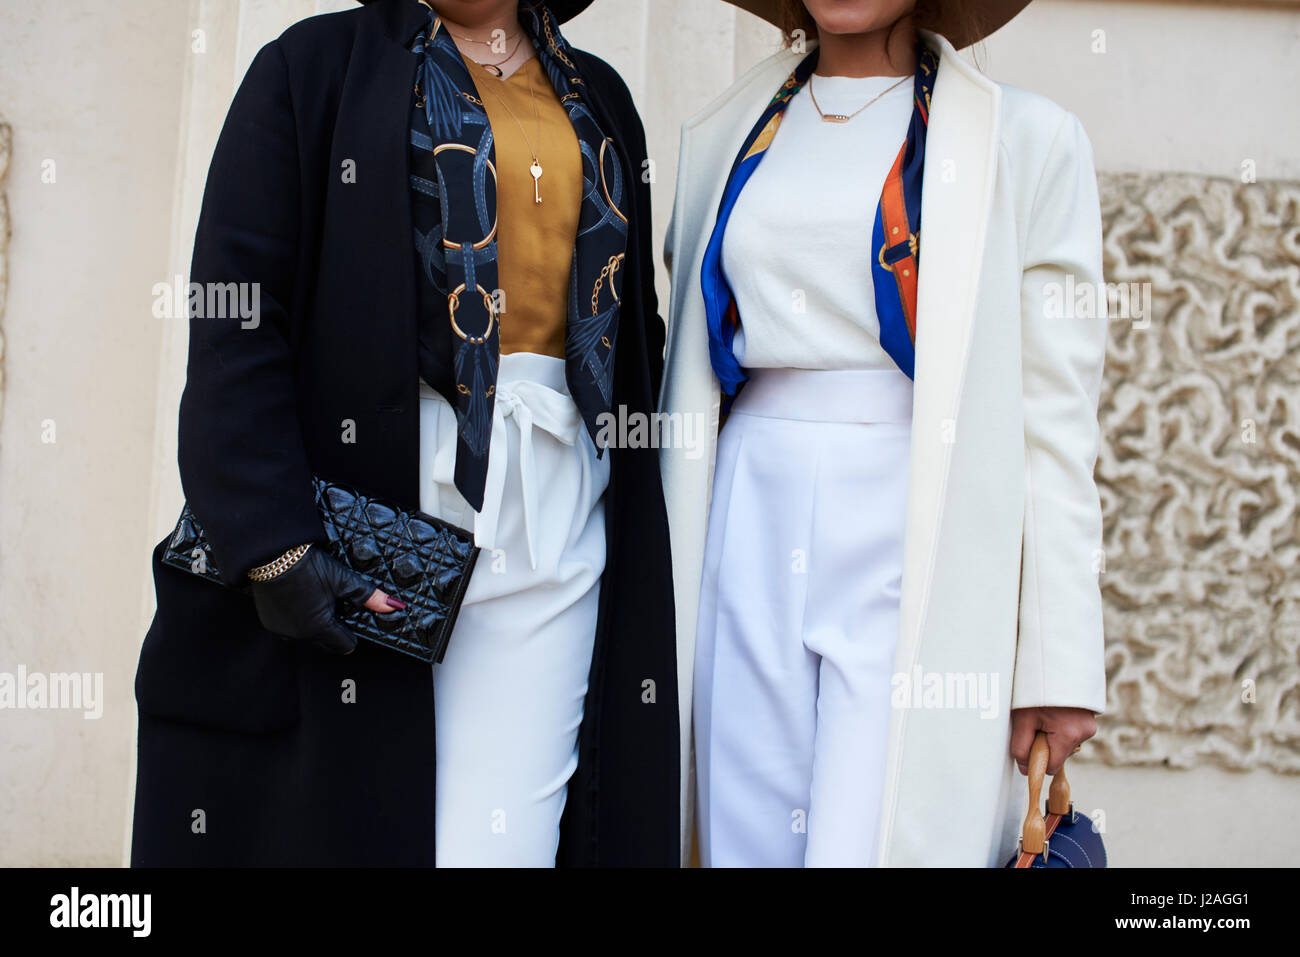 Londres - Febrero, 2017: sección intermedia de dos mujeres en la calle la celebración de bolsos, Chanel bolso de cuero en la izquierda, mientras que la mujer de la derecha lleva un Chopard Correa, durante la Semana de la Moda de Londres, horizontal, vista frontal Foto de stock